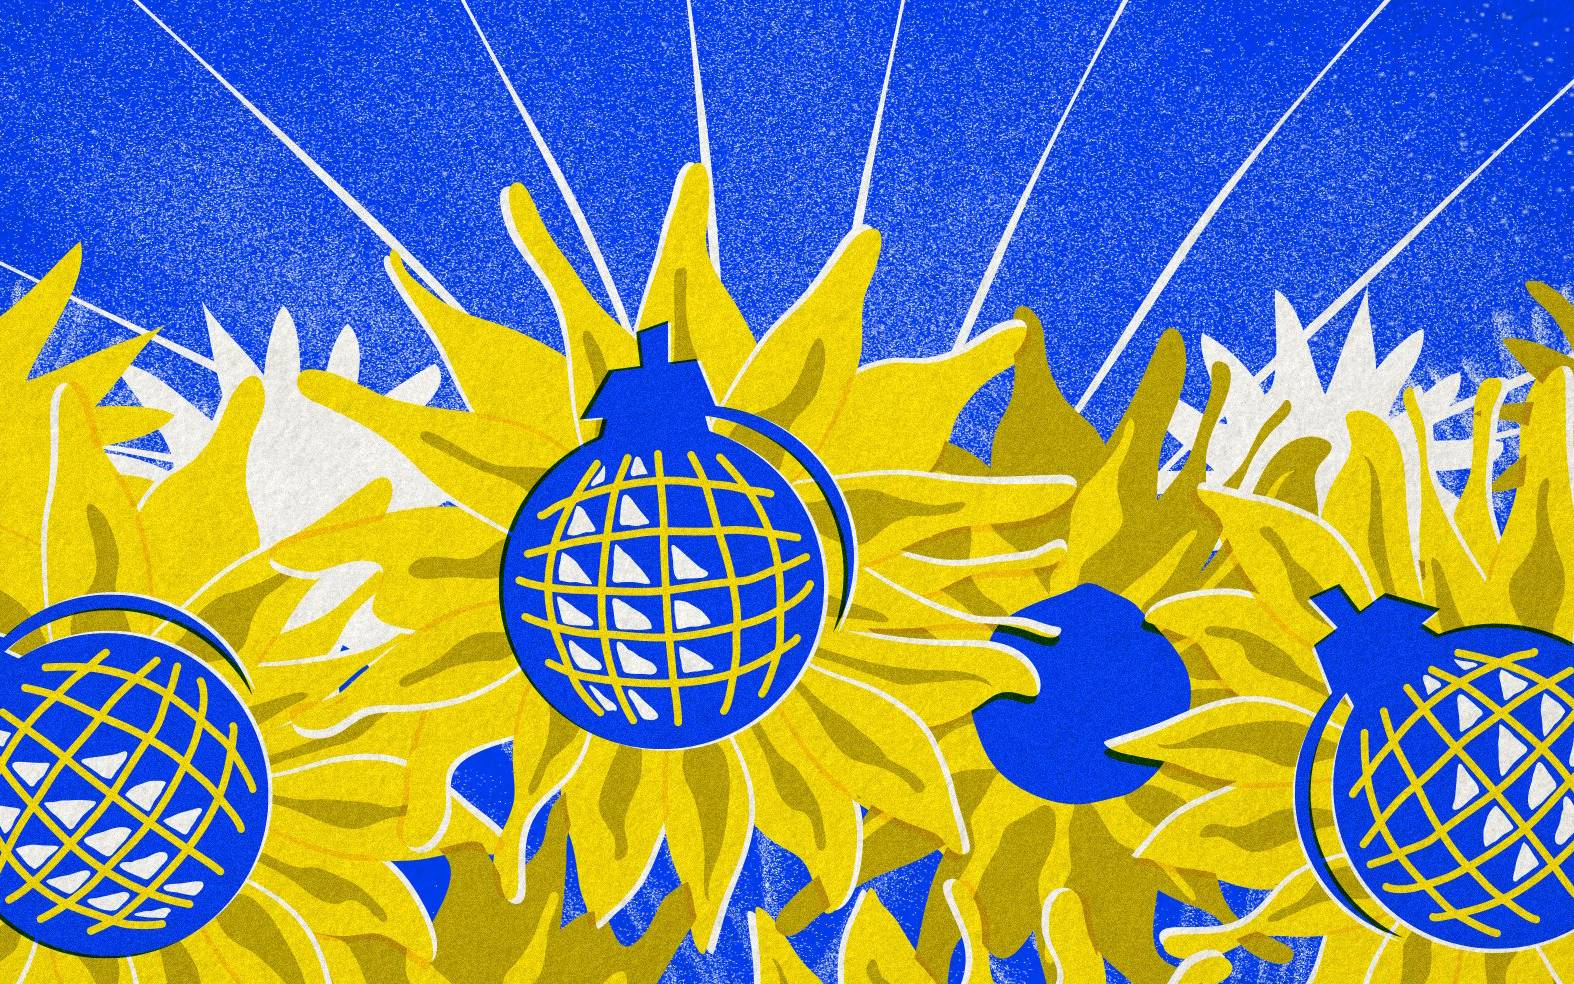 Grafika. Na tle niebieskiego nieba - zołte słoneczniki (barwy Ukrainy). Słoneczniki mają środki z niebieskich bomb